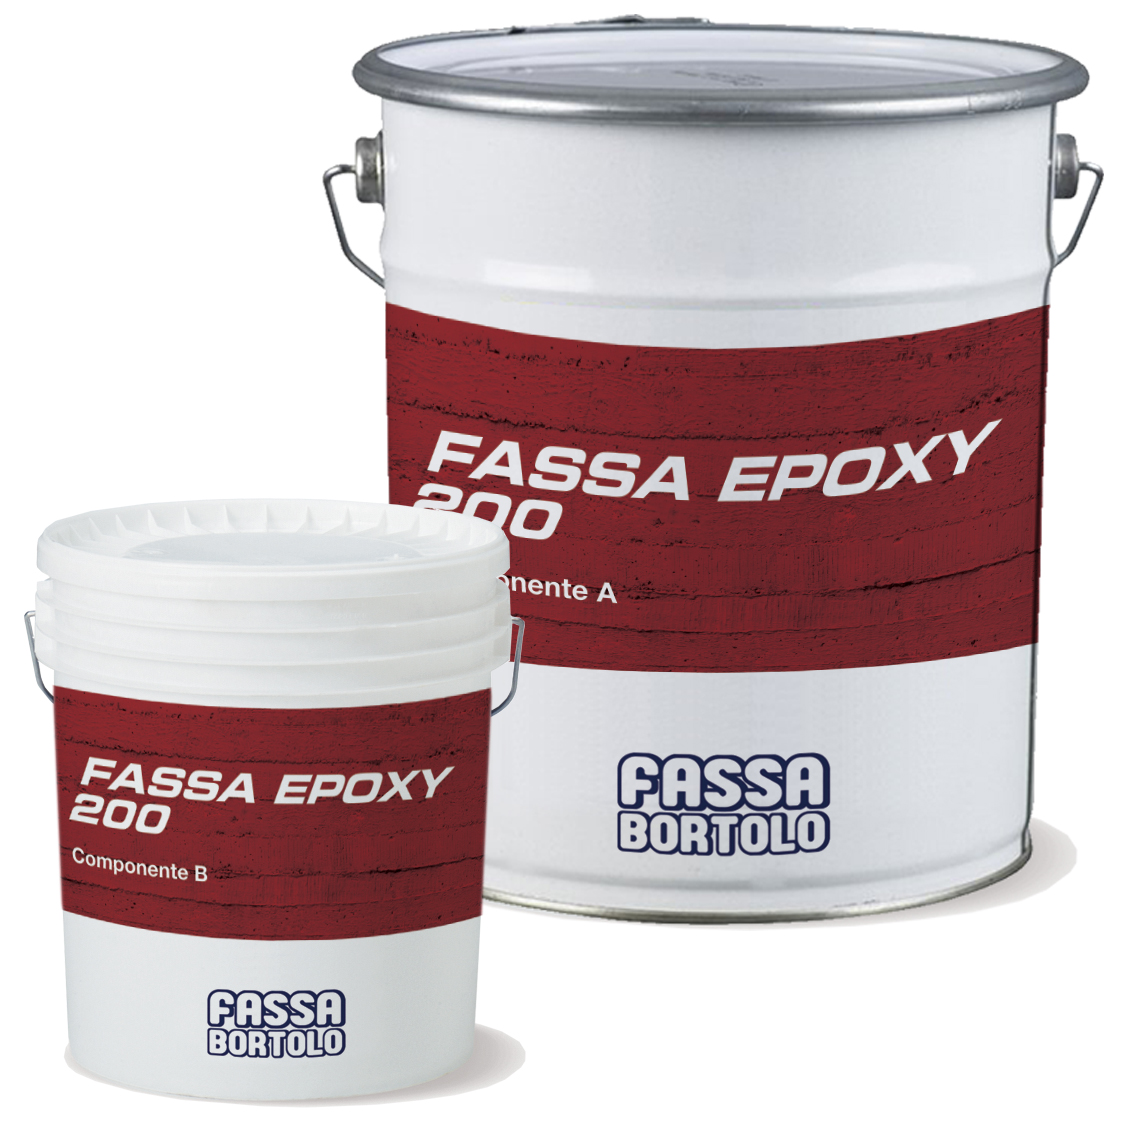 FASSA EPOXY 200